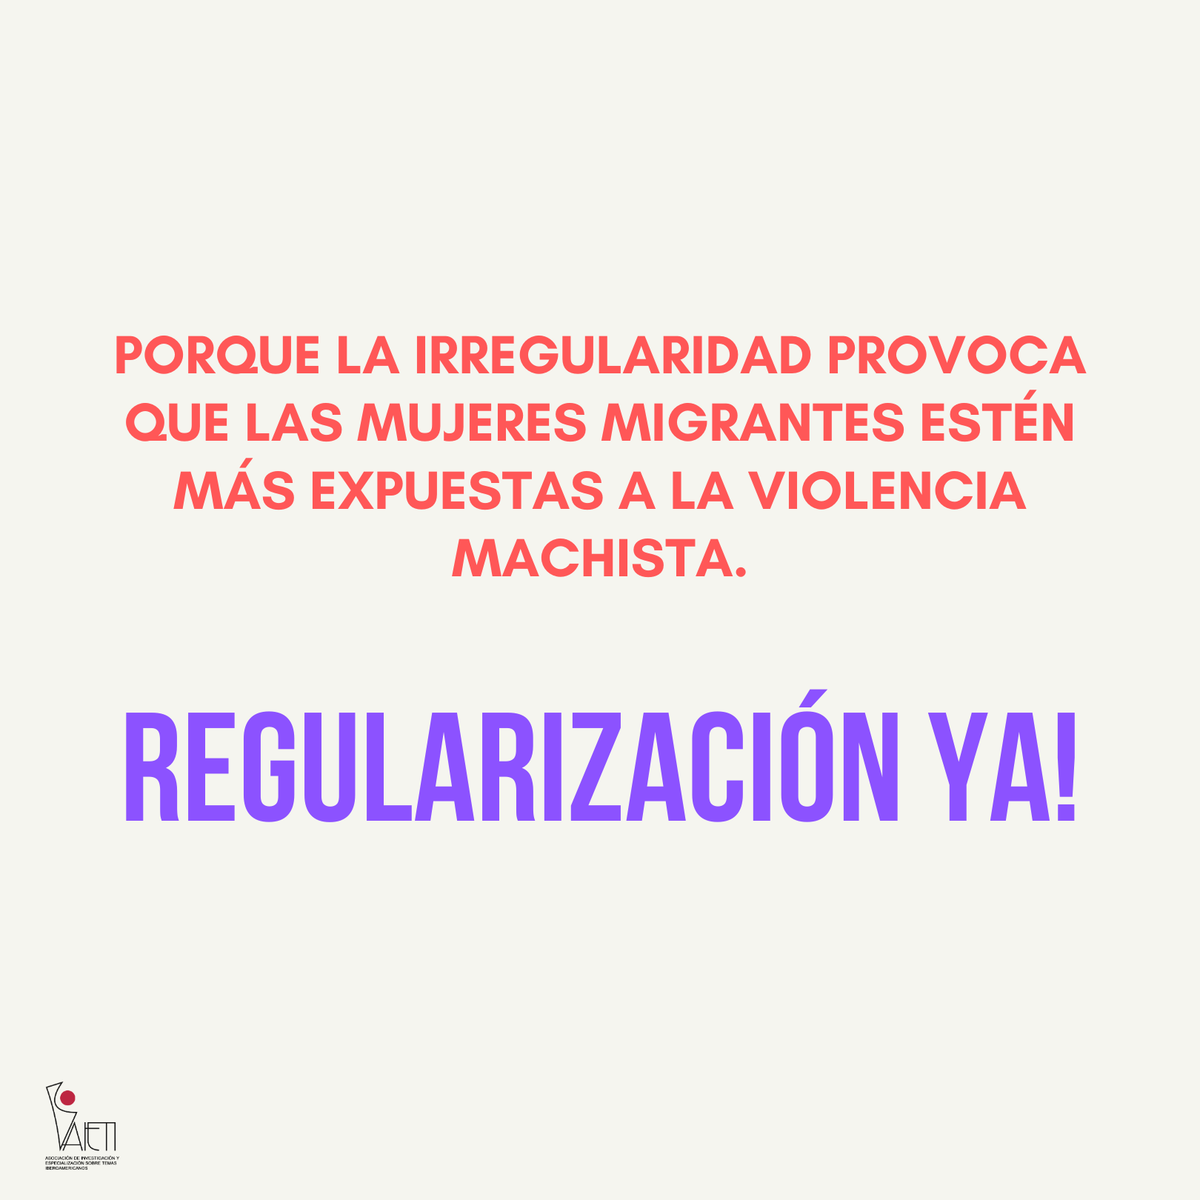 ✍️🏾 +700.000 personas firmaron la ILP para regularizar a 500.000 personas en situación irregular en España. 🔴La ILP #RegularizacionYa se debe debatir porq en un país democrático y con un gobierno de izquierda, no es posible dar la espalda a migrantes que son escenciales.